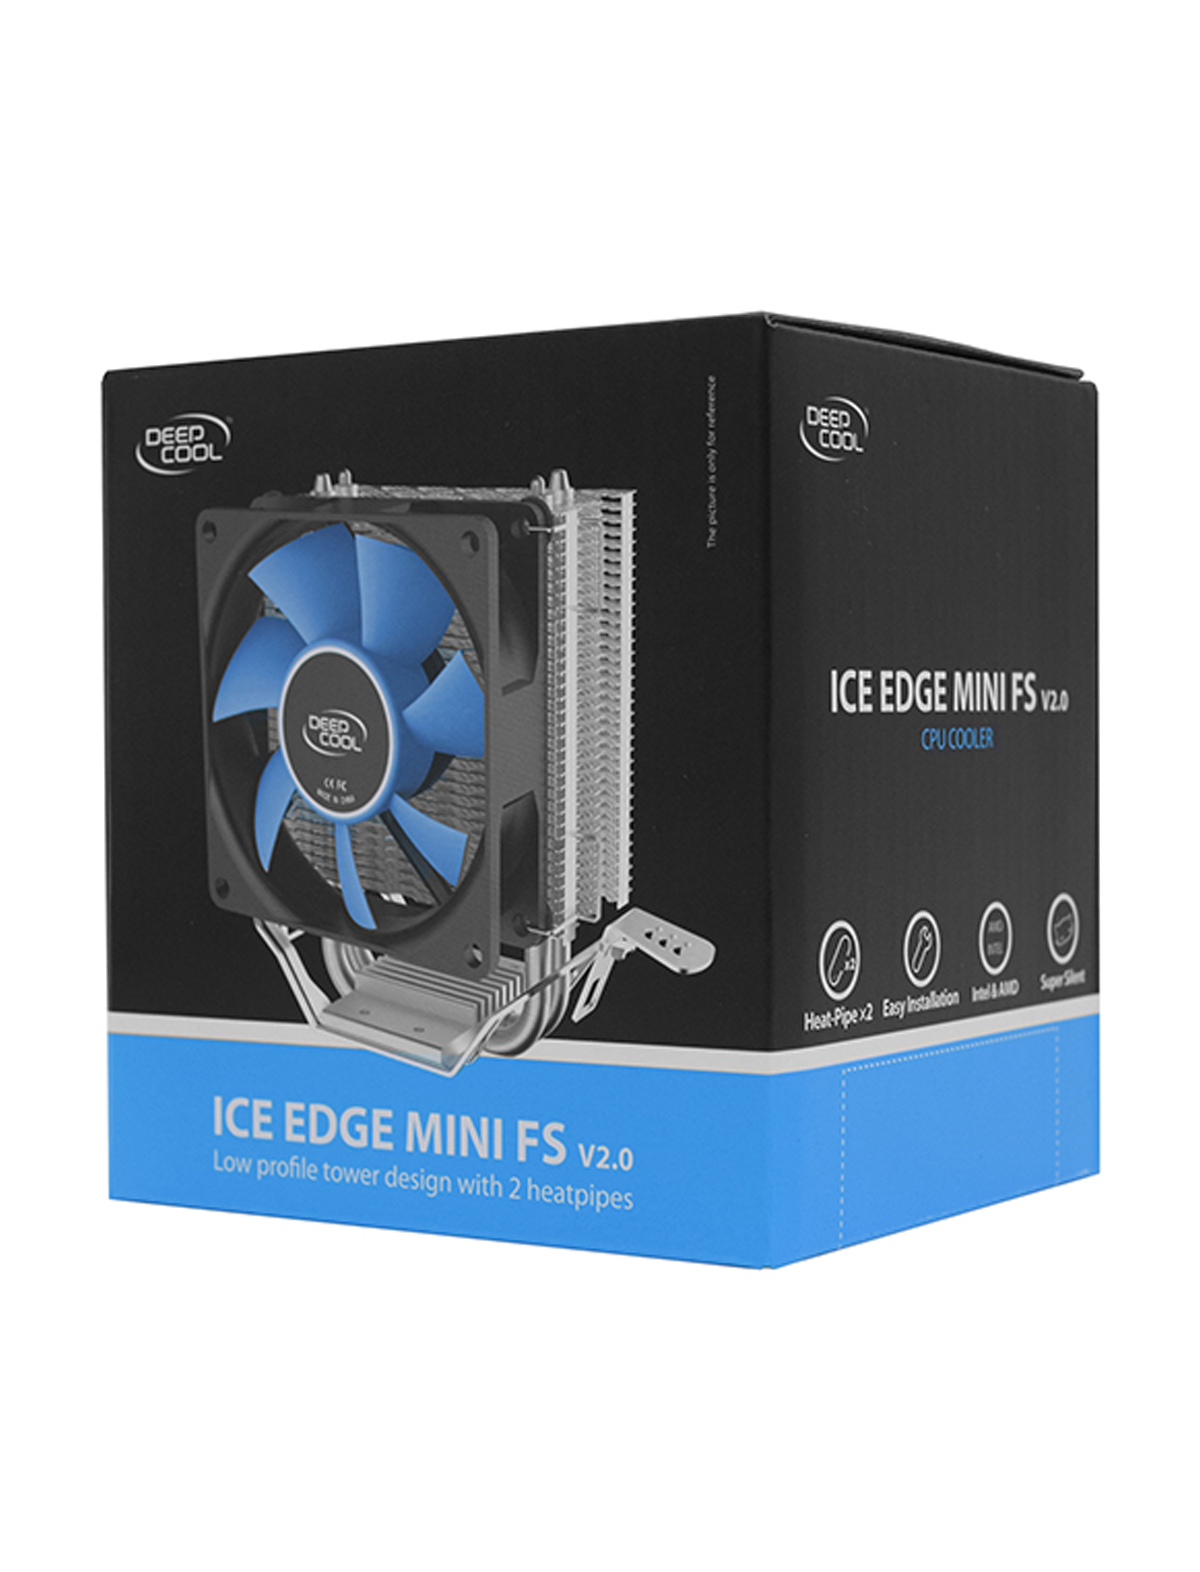 Fs v 2.0. Кулер Ice Edge Mini fs2. Deepcool Ice Edge Mini FS 2.0. Deepcool Ice Edge Mini FS V2.0. Ice Edge Mini FS V2.0 коробка.